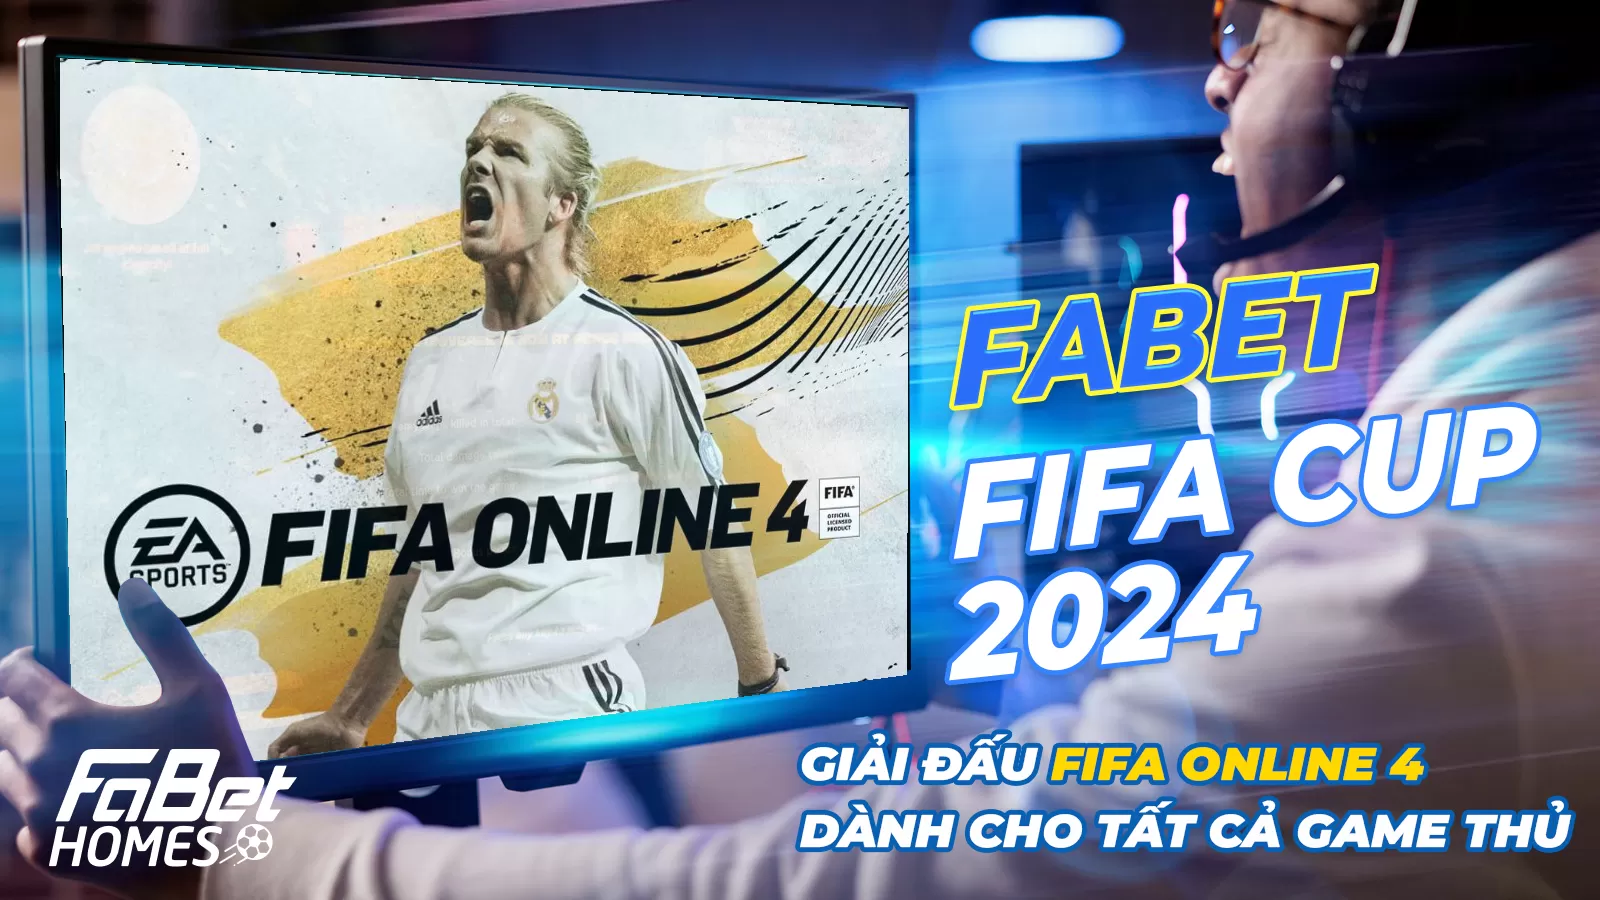 FABET FIFA CUP 2024: Giải vô địch FIFA Online 4 toàn quốc dành cho sinh viên